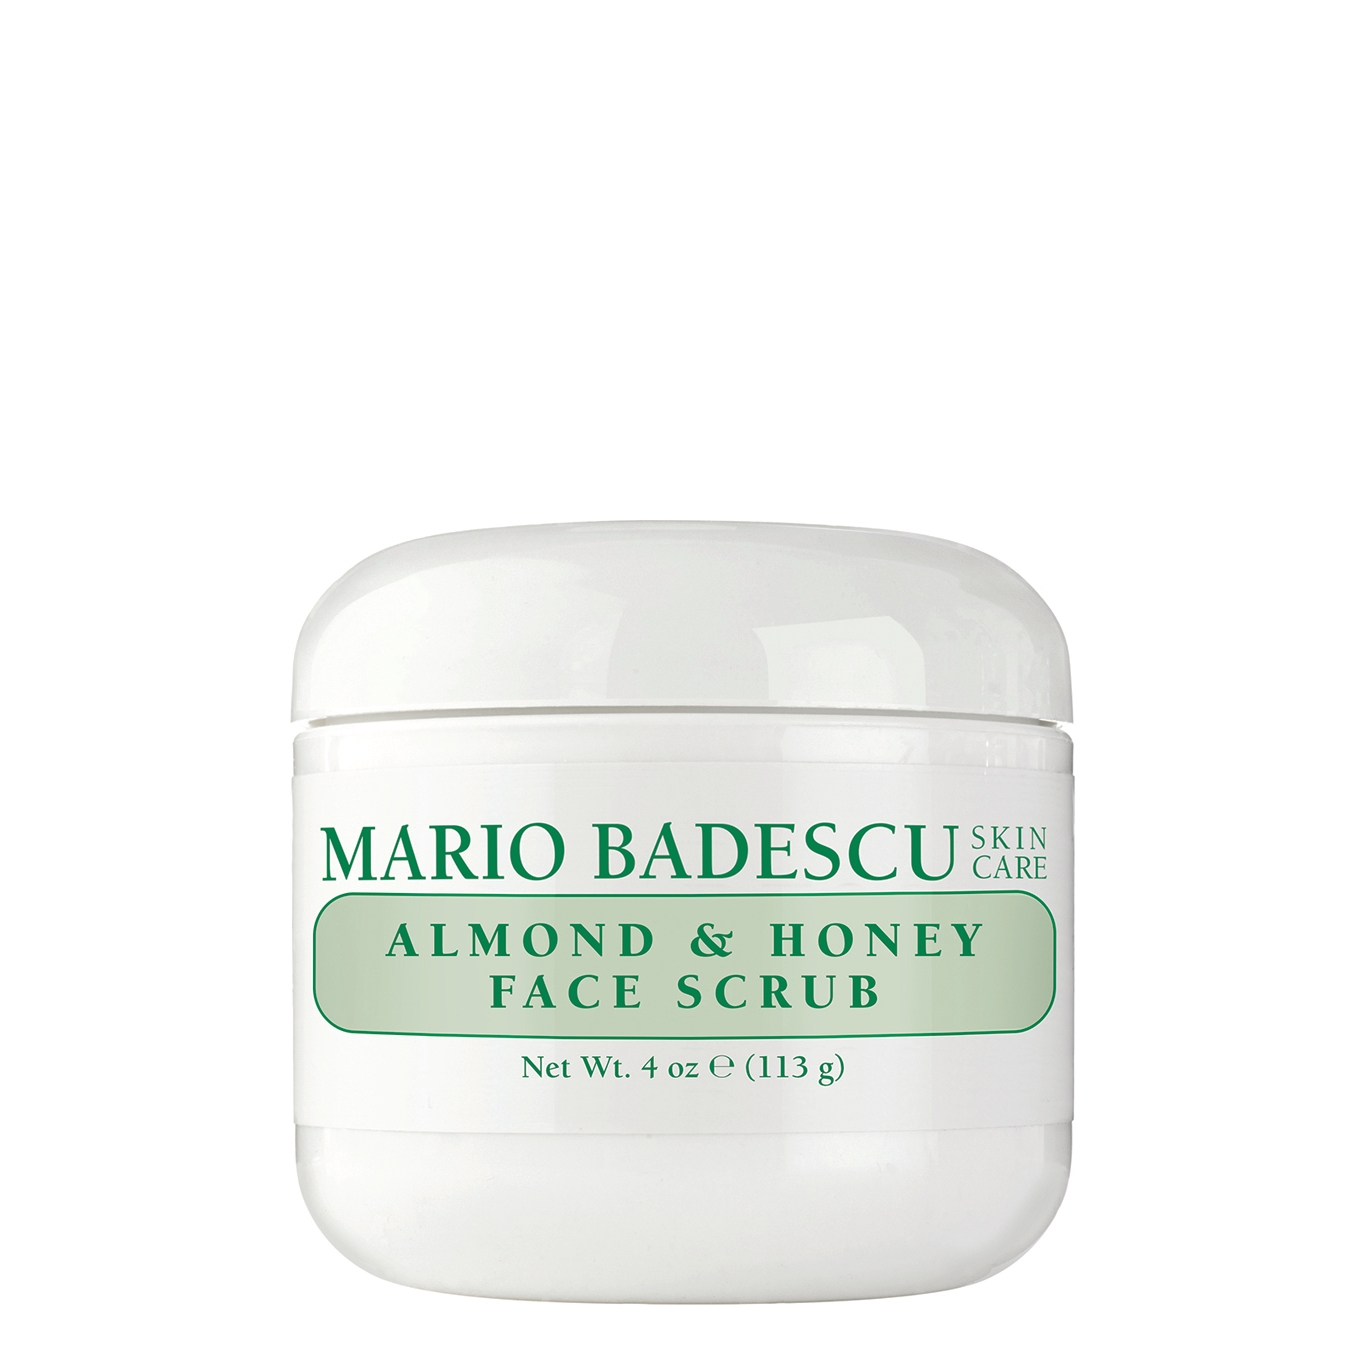 Mario Badescu Almond & Honey Non-abrasive Face Scrub 113g In White